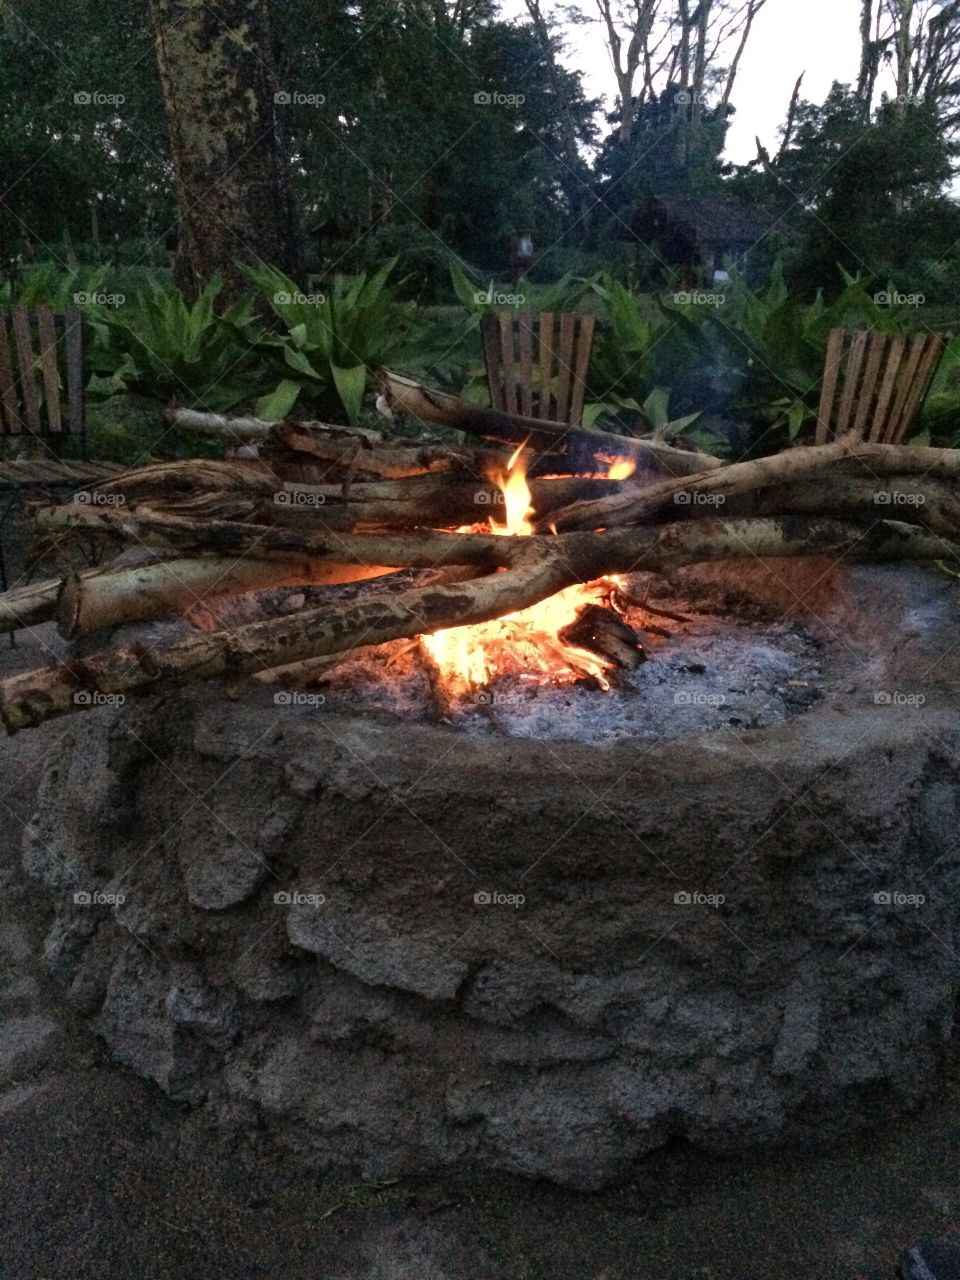 Fire pit in Tanzania, Africa